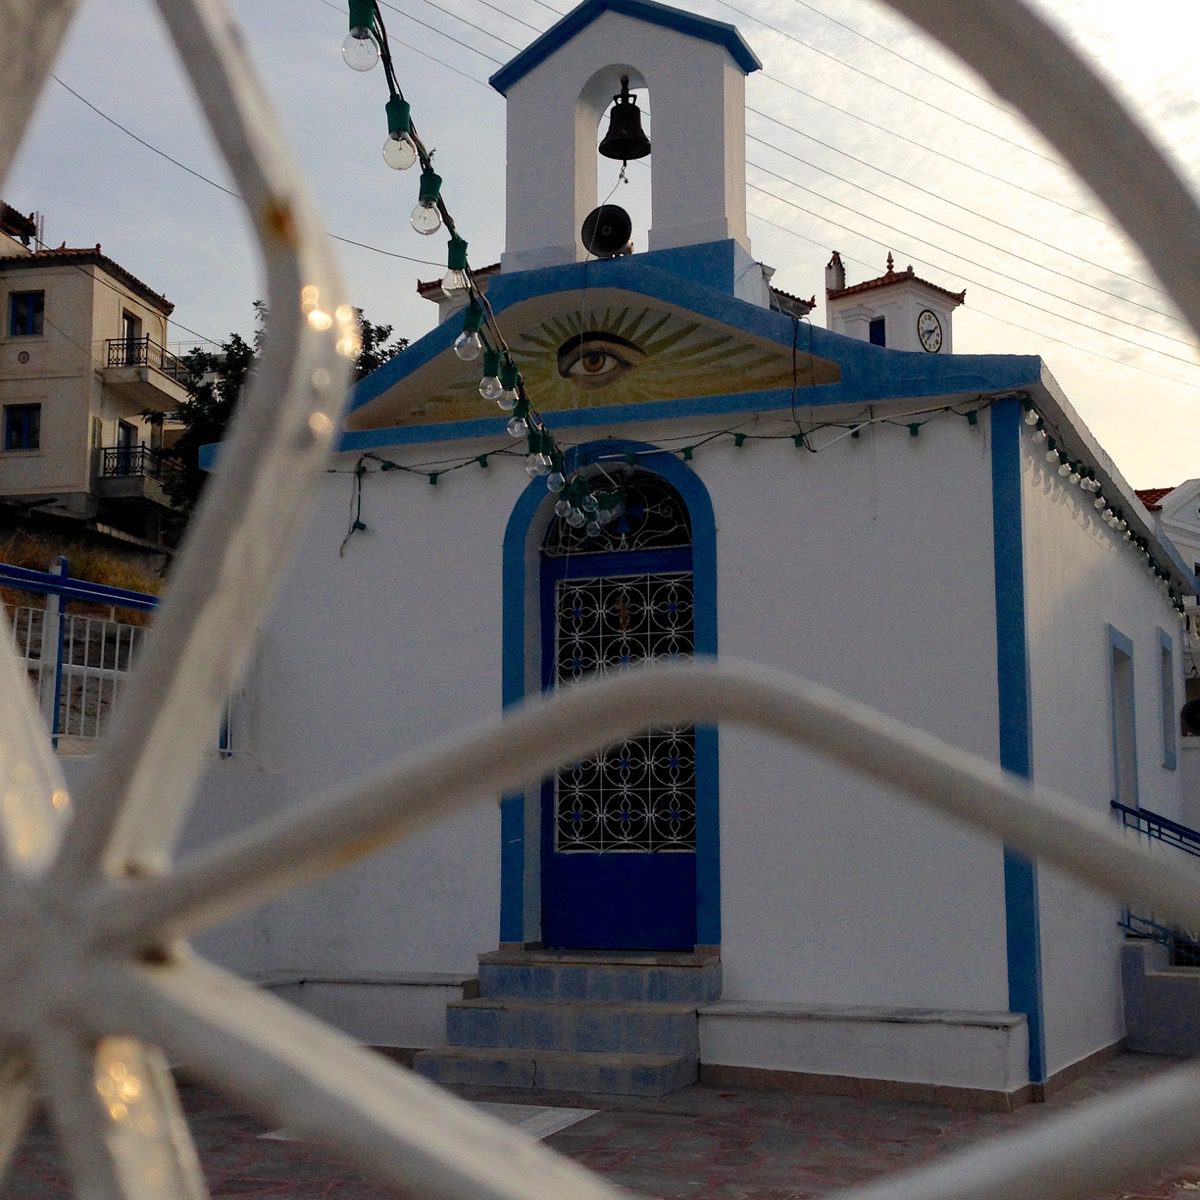 Diesem Blick kann ich leider nicht entgehen... Eine Kirche auf der griechischen Insel Poros (Poros, Griechenland, September 2020).